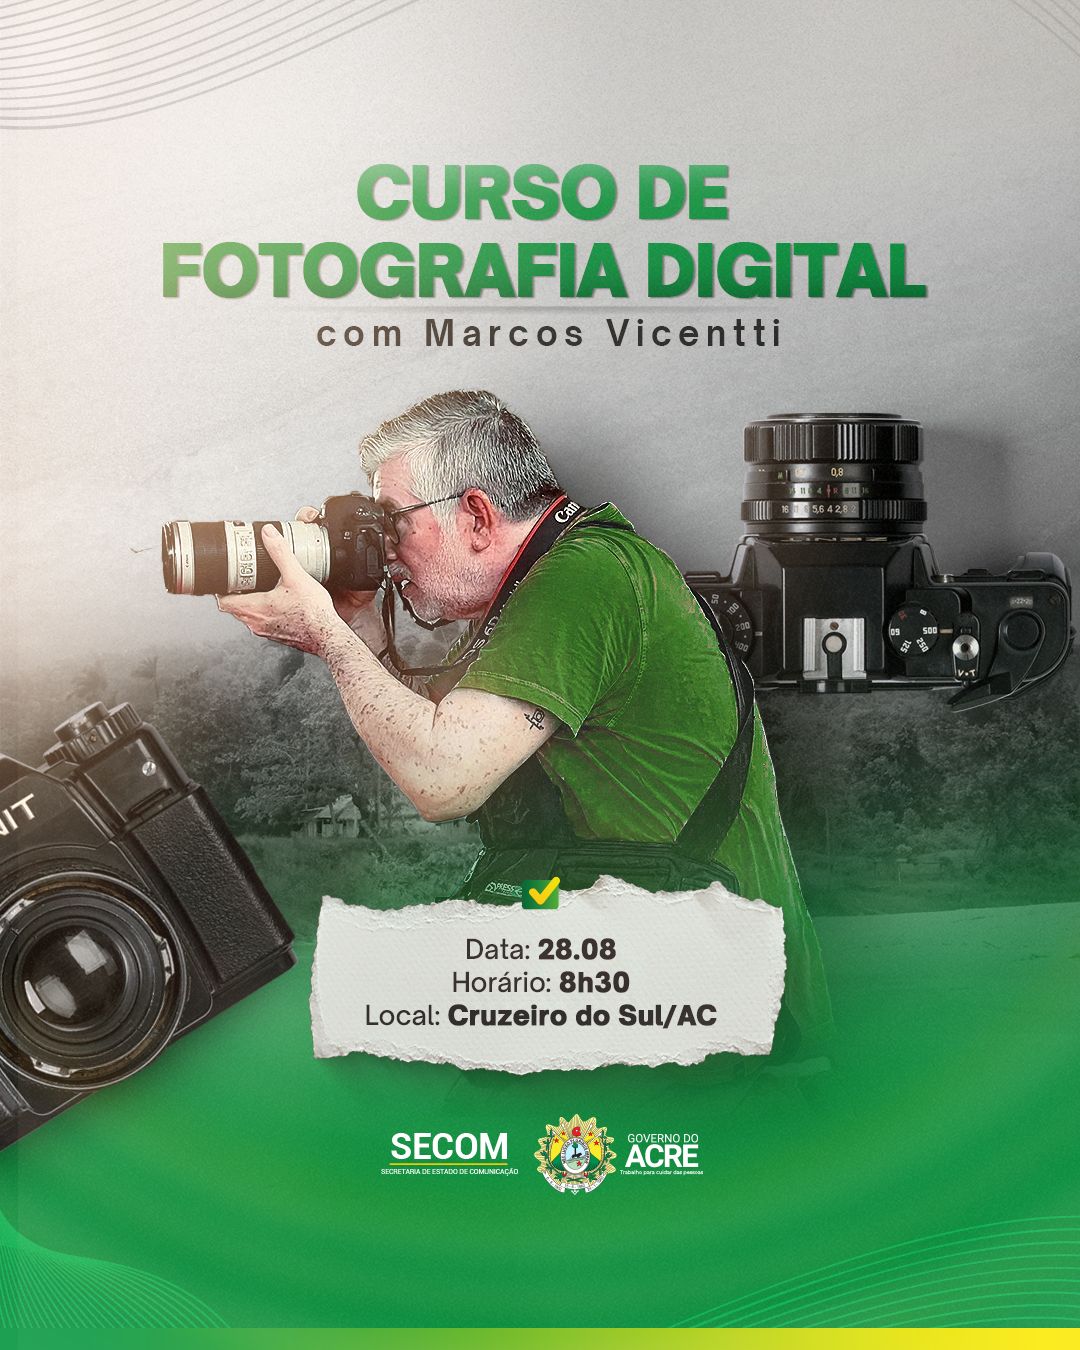 Estado realizará curso de fotografia digital para profissionais da comunicação em Cruzeiro do Sul